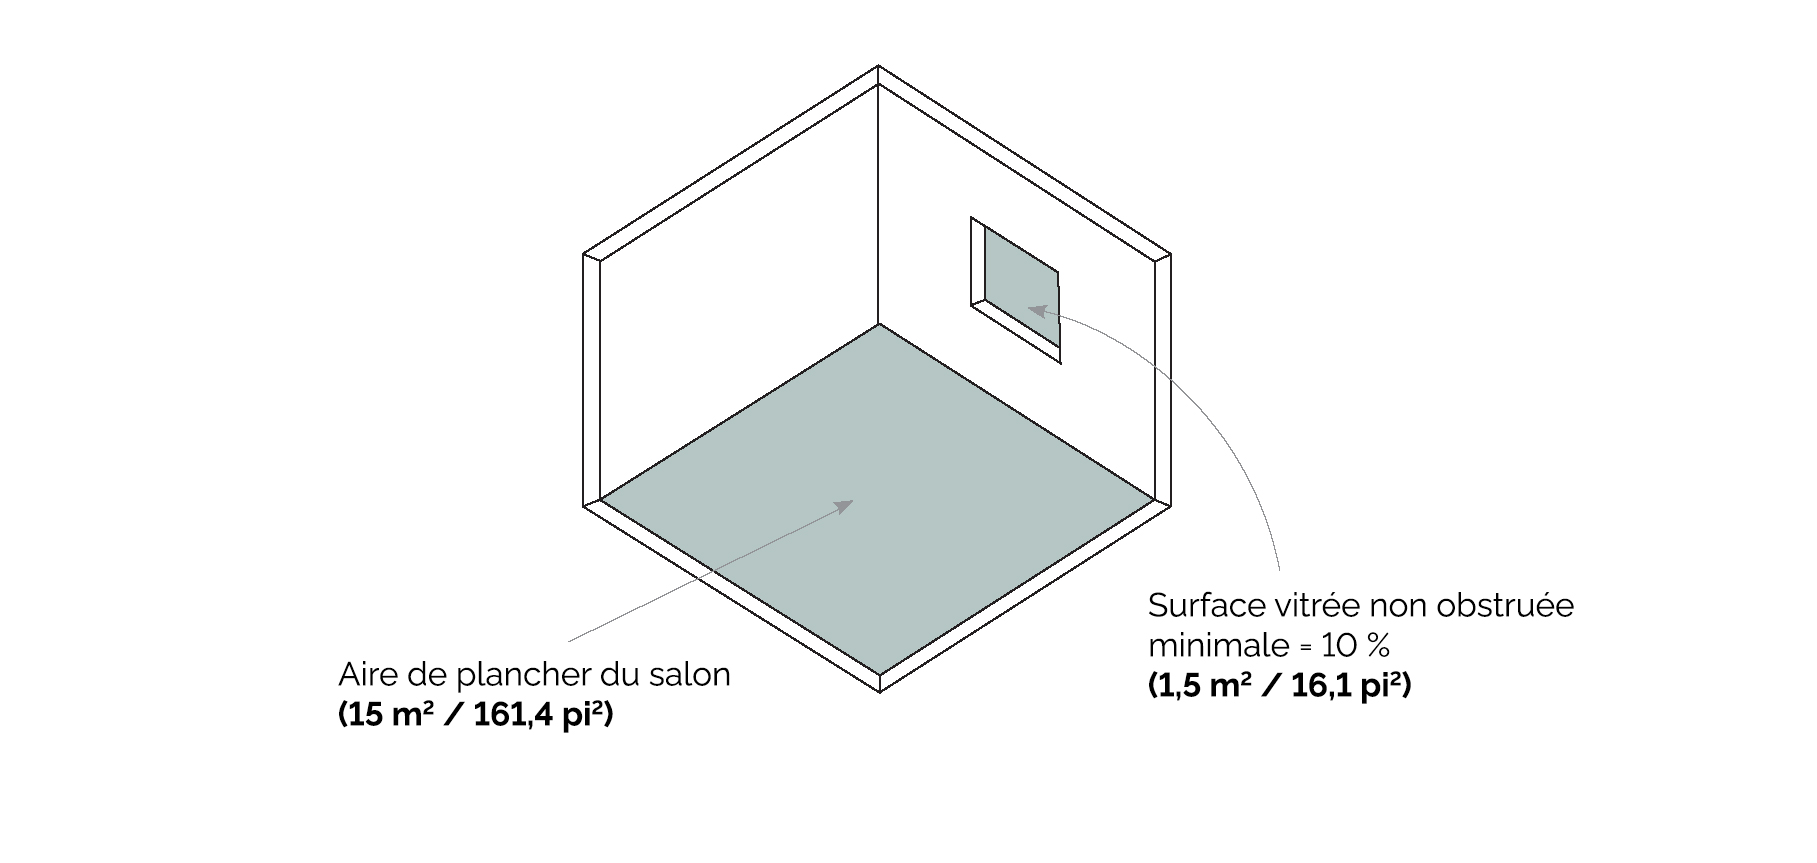 Schéma montrant comment calculer la superficie d'une fenêtre en fonction de celle de la pièce d’une nouvelle maison d’allée.